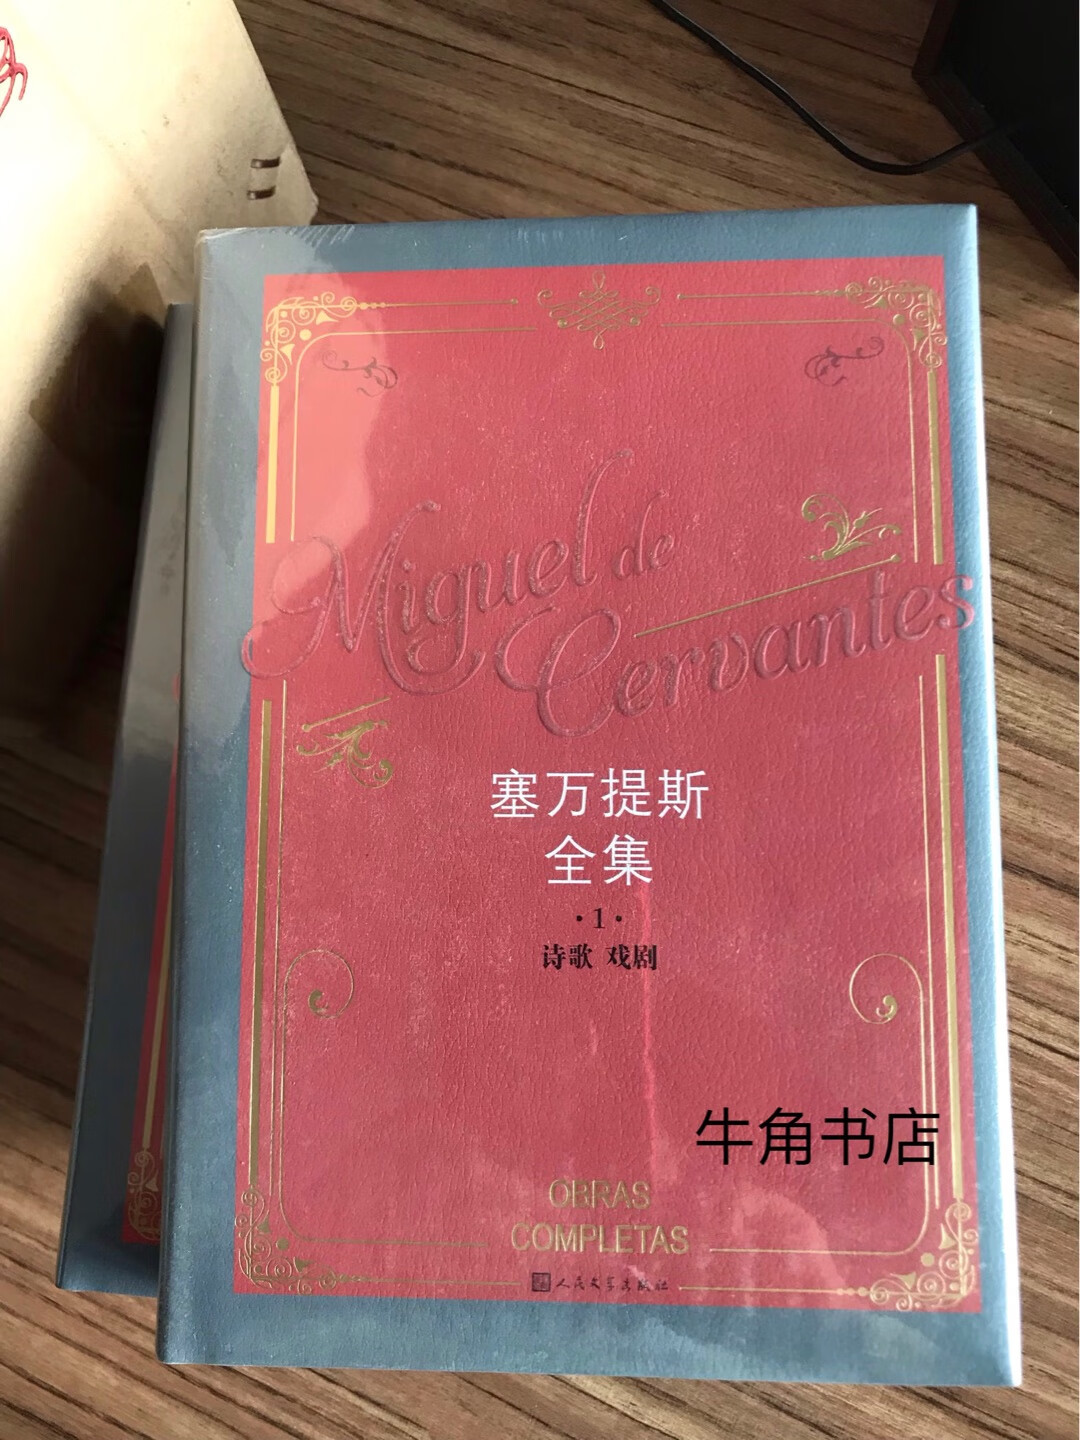 这套全集中所收的《堂吉诃德》是保留了杨绛先生的译著。买一套收藏。